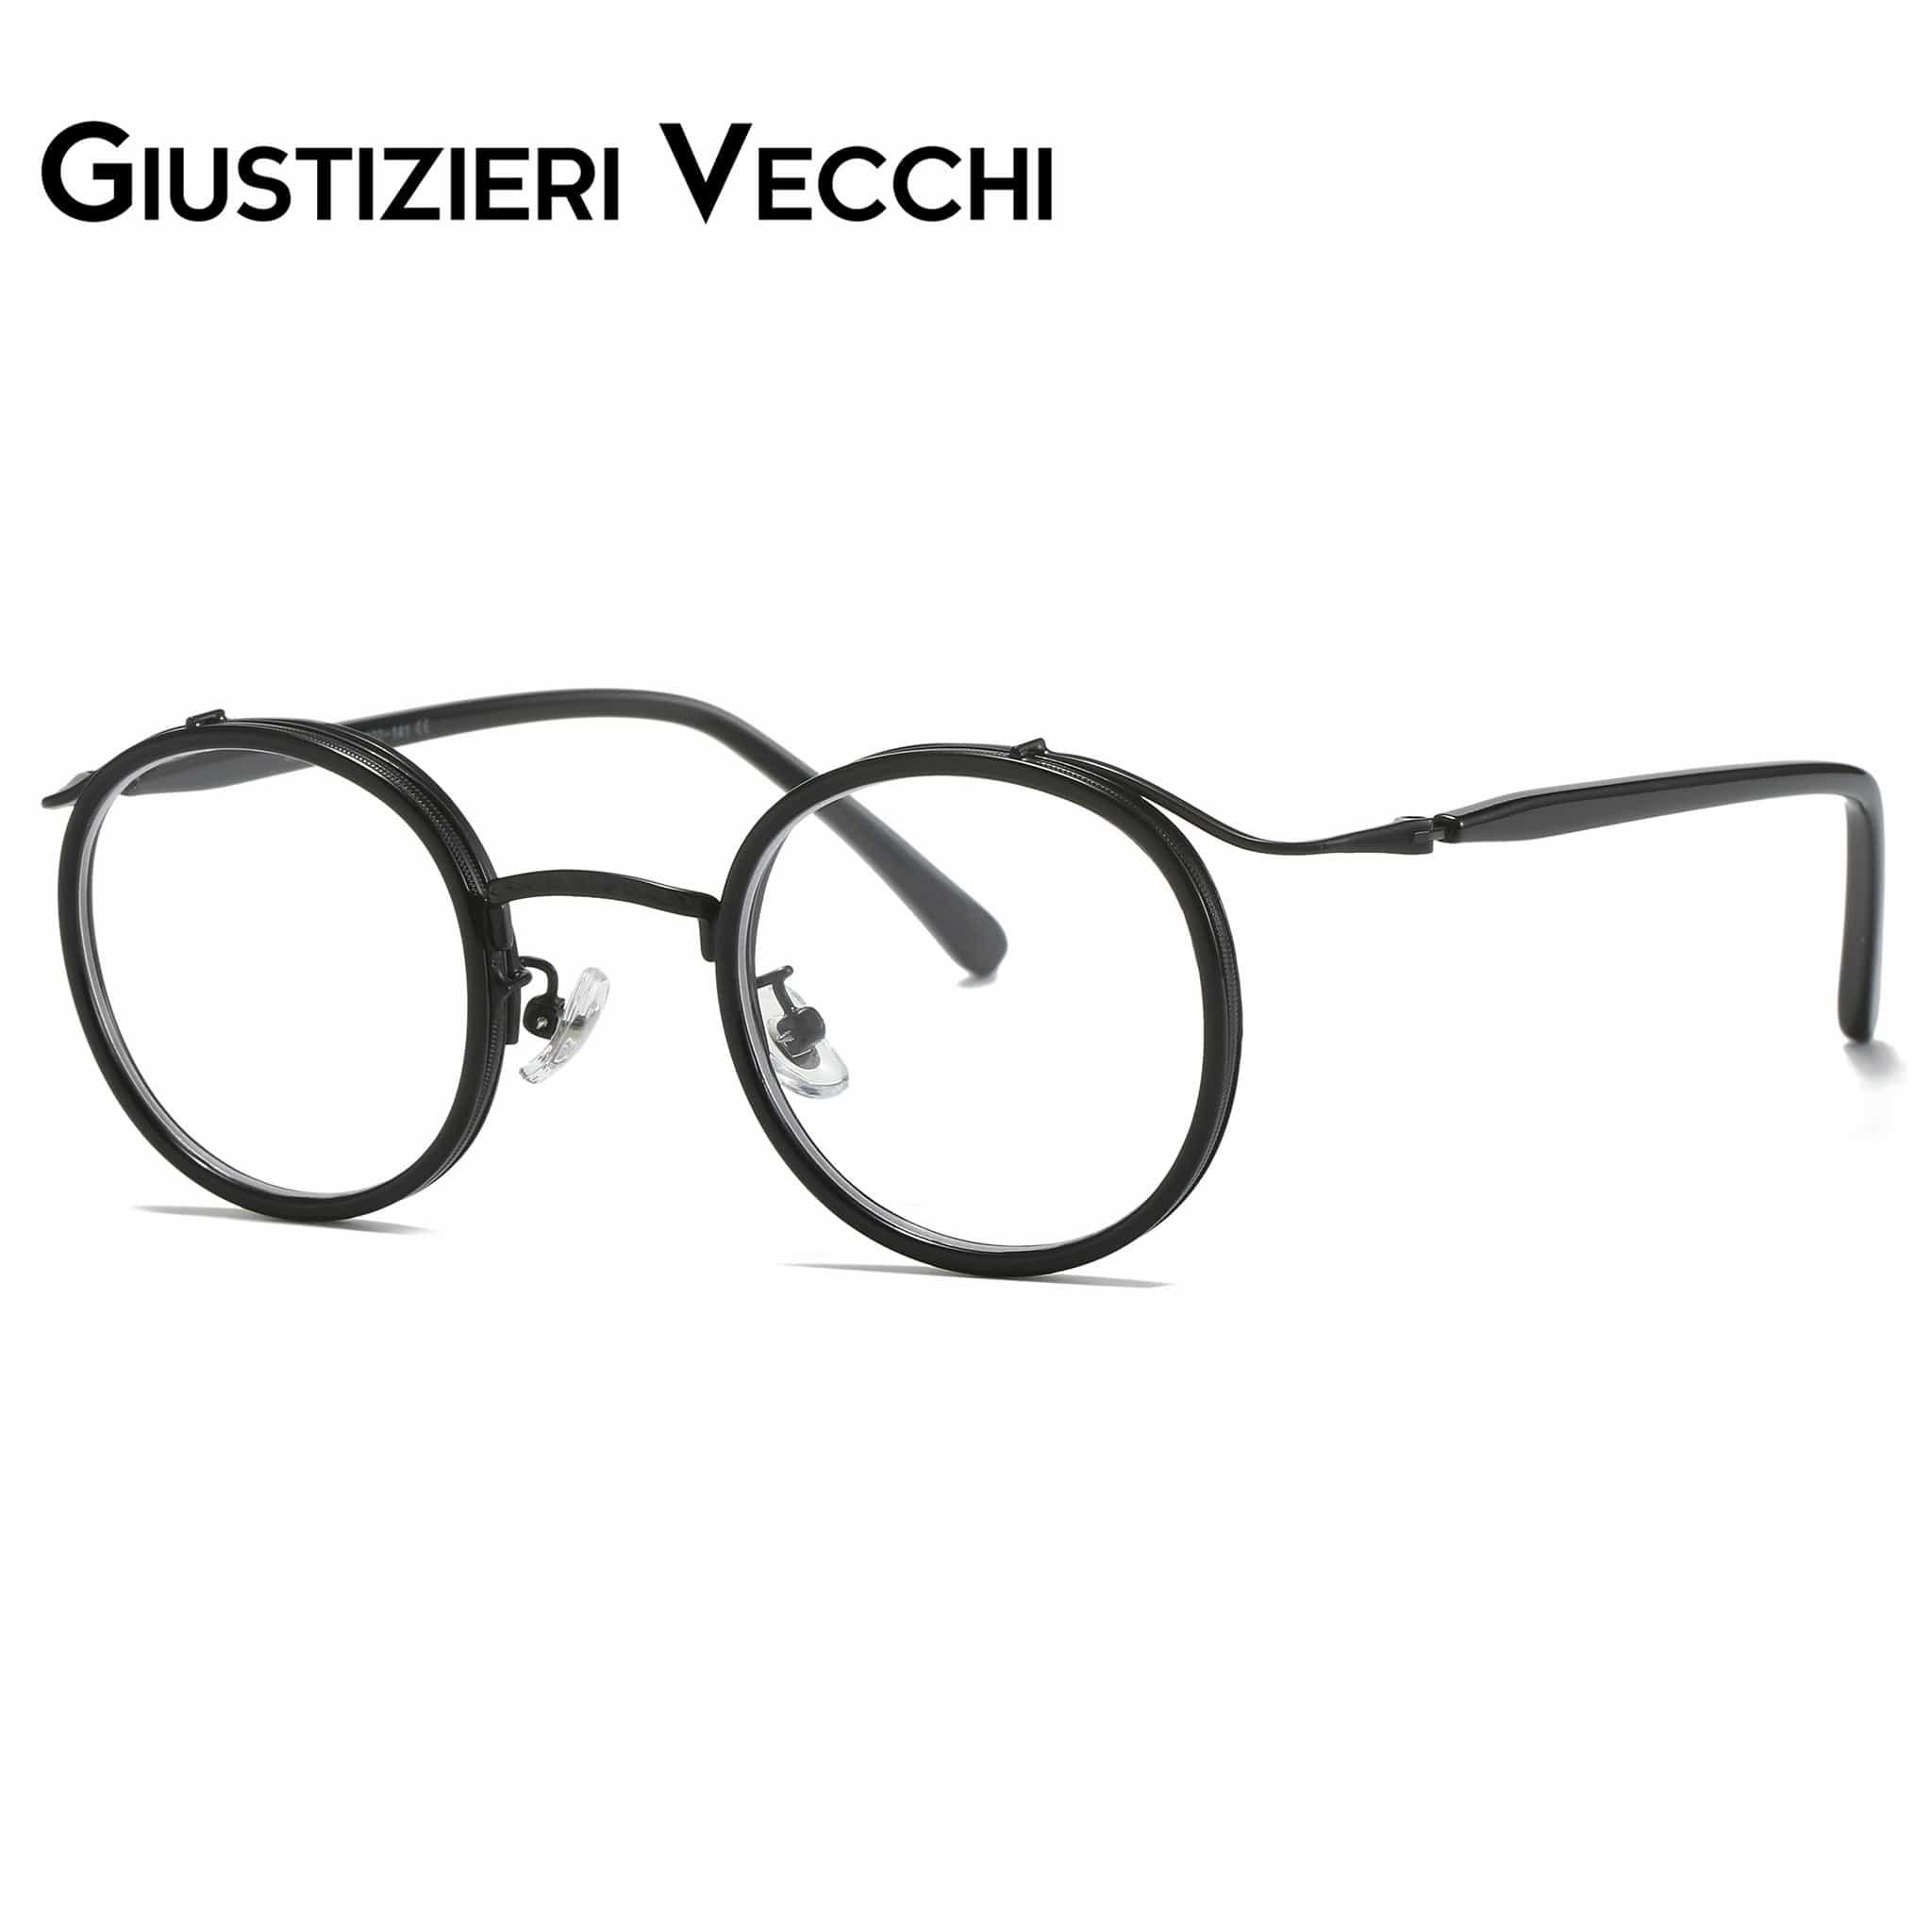 GIUSTIZIERI VECCHI Eyeglasses Grapevine Uno